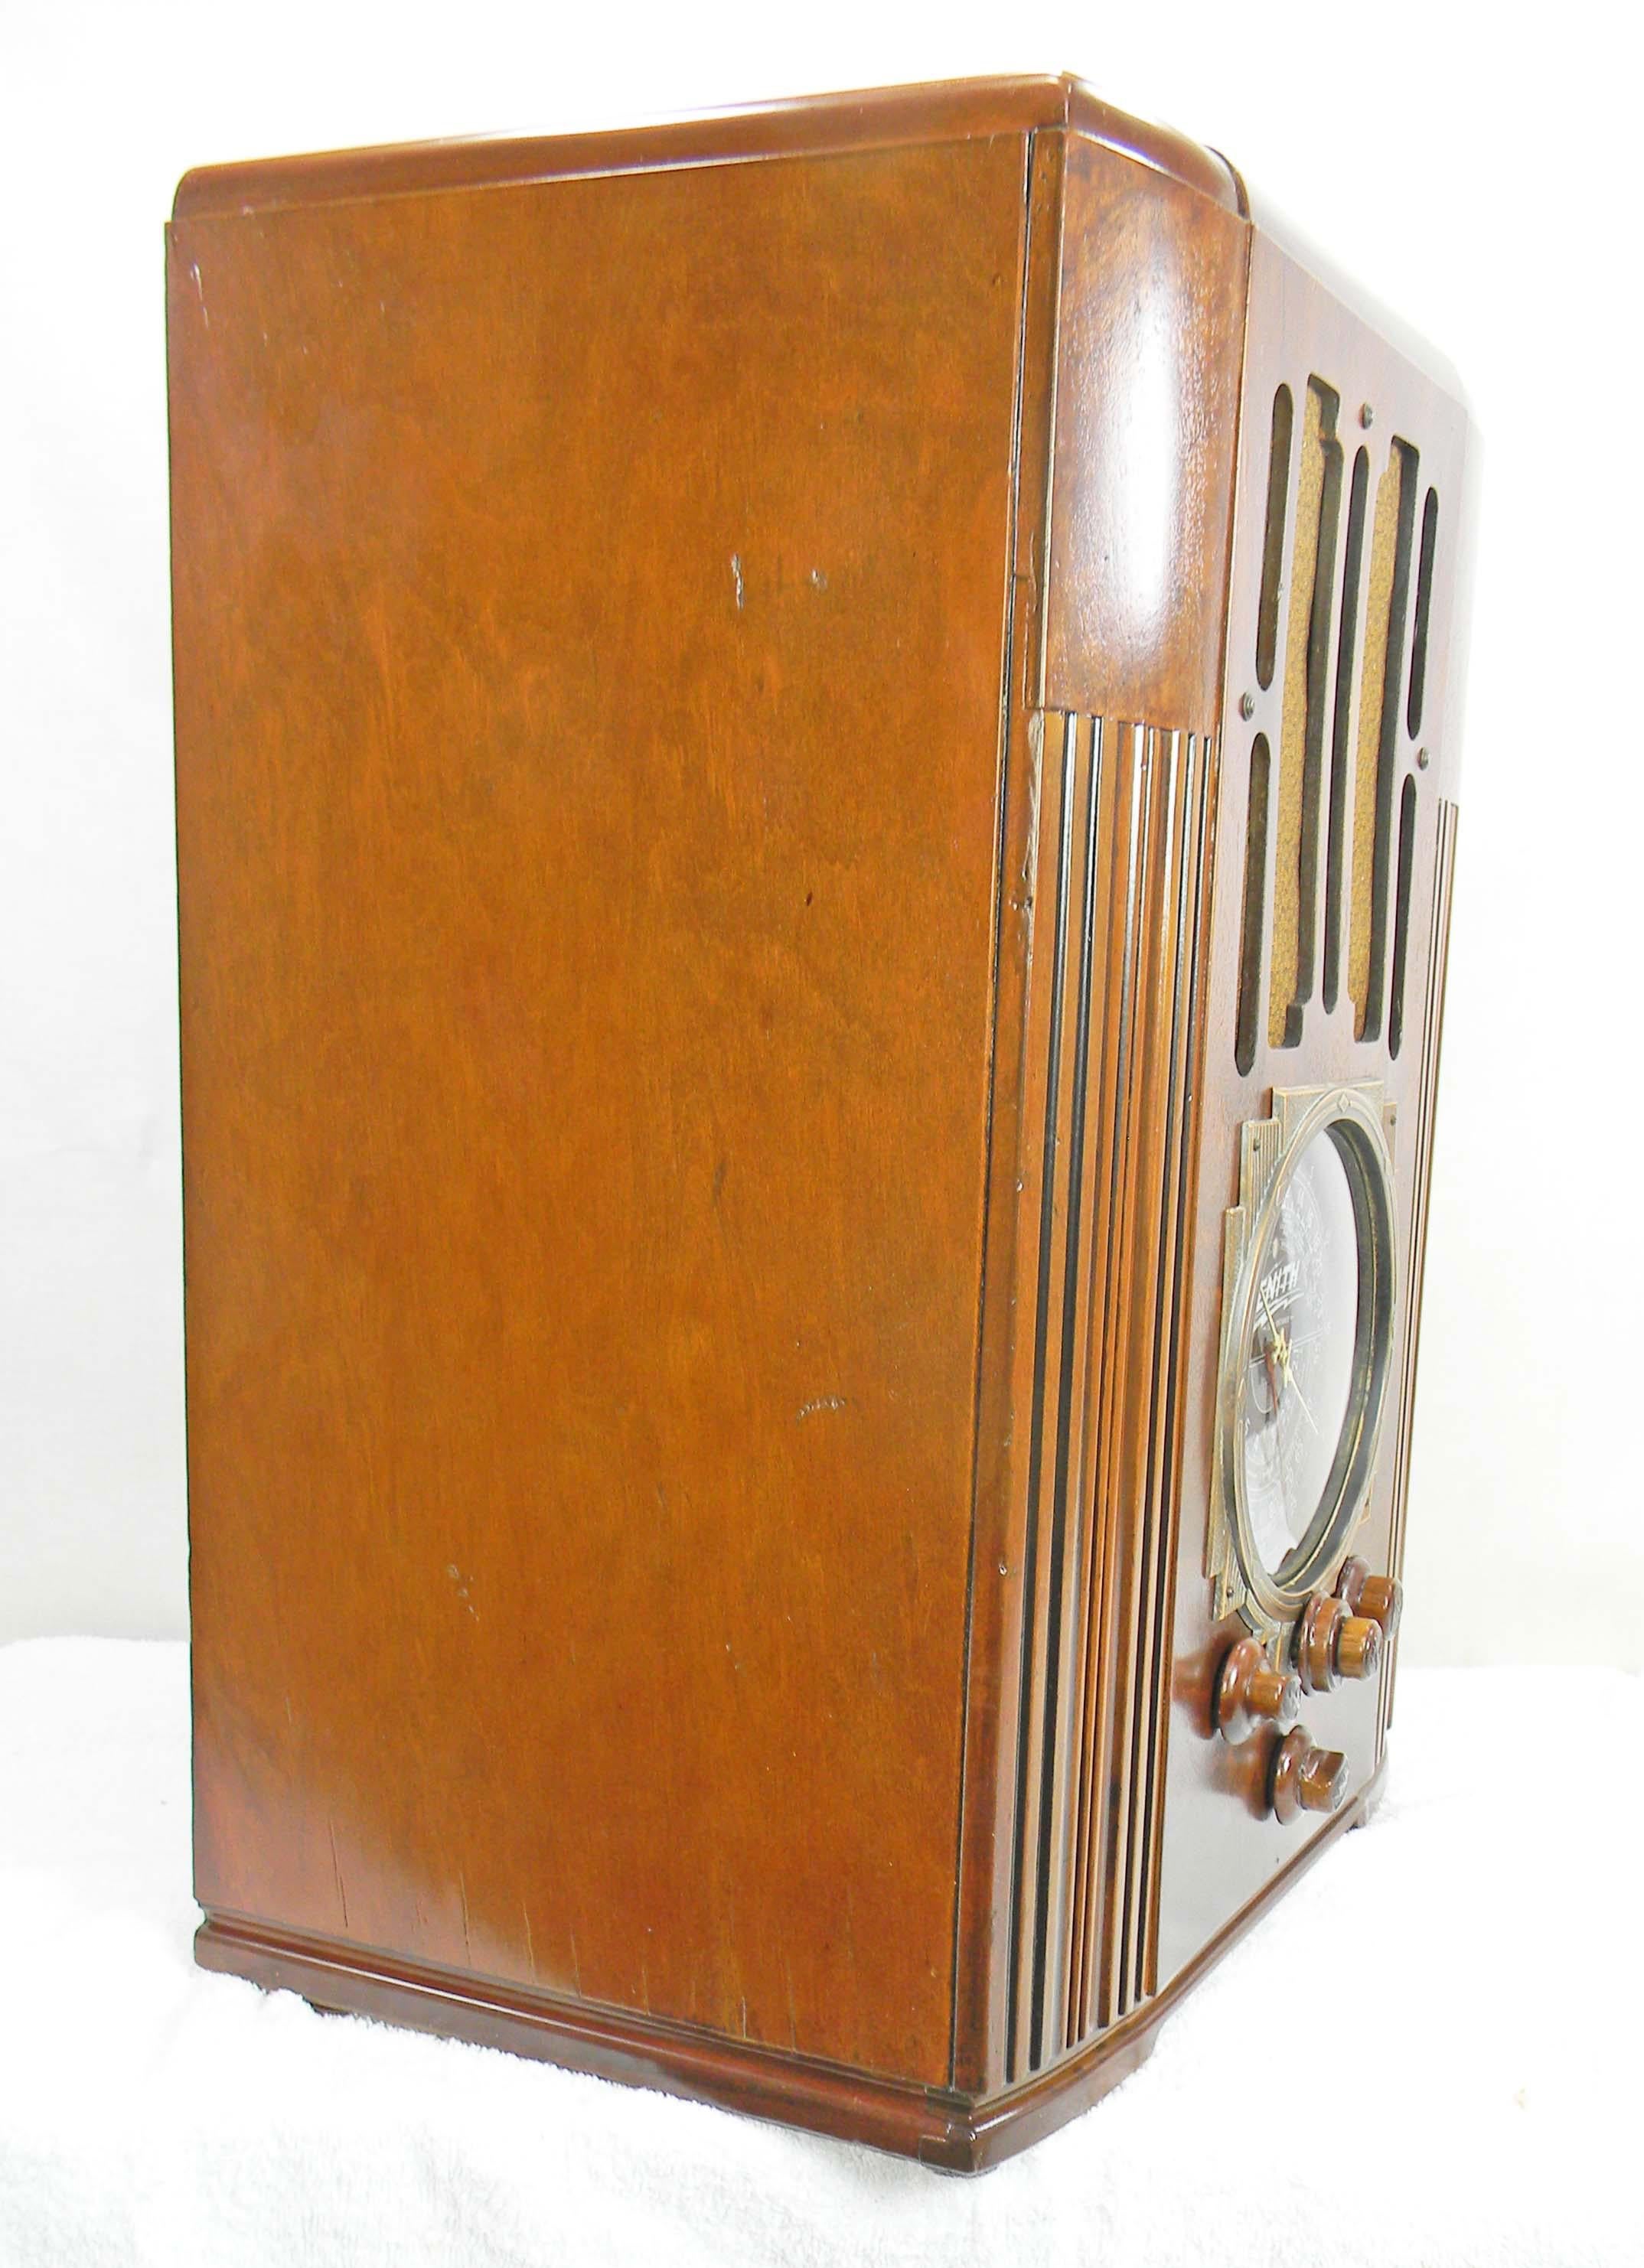 1936 zenith radio